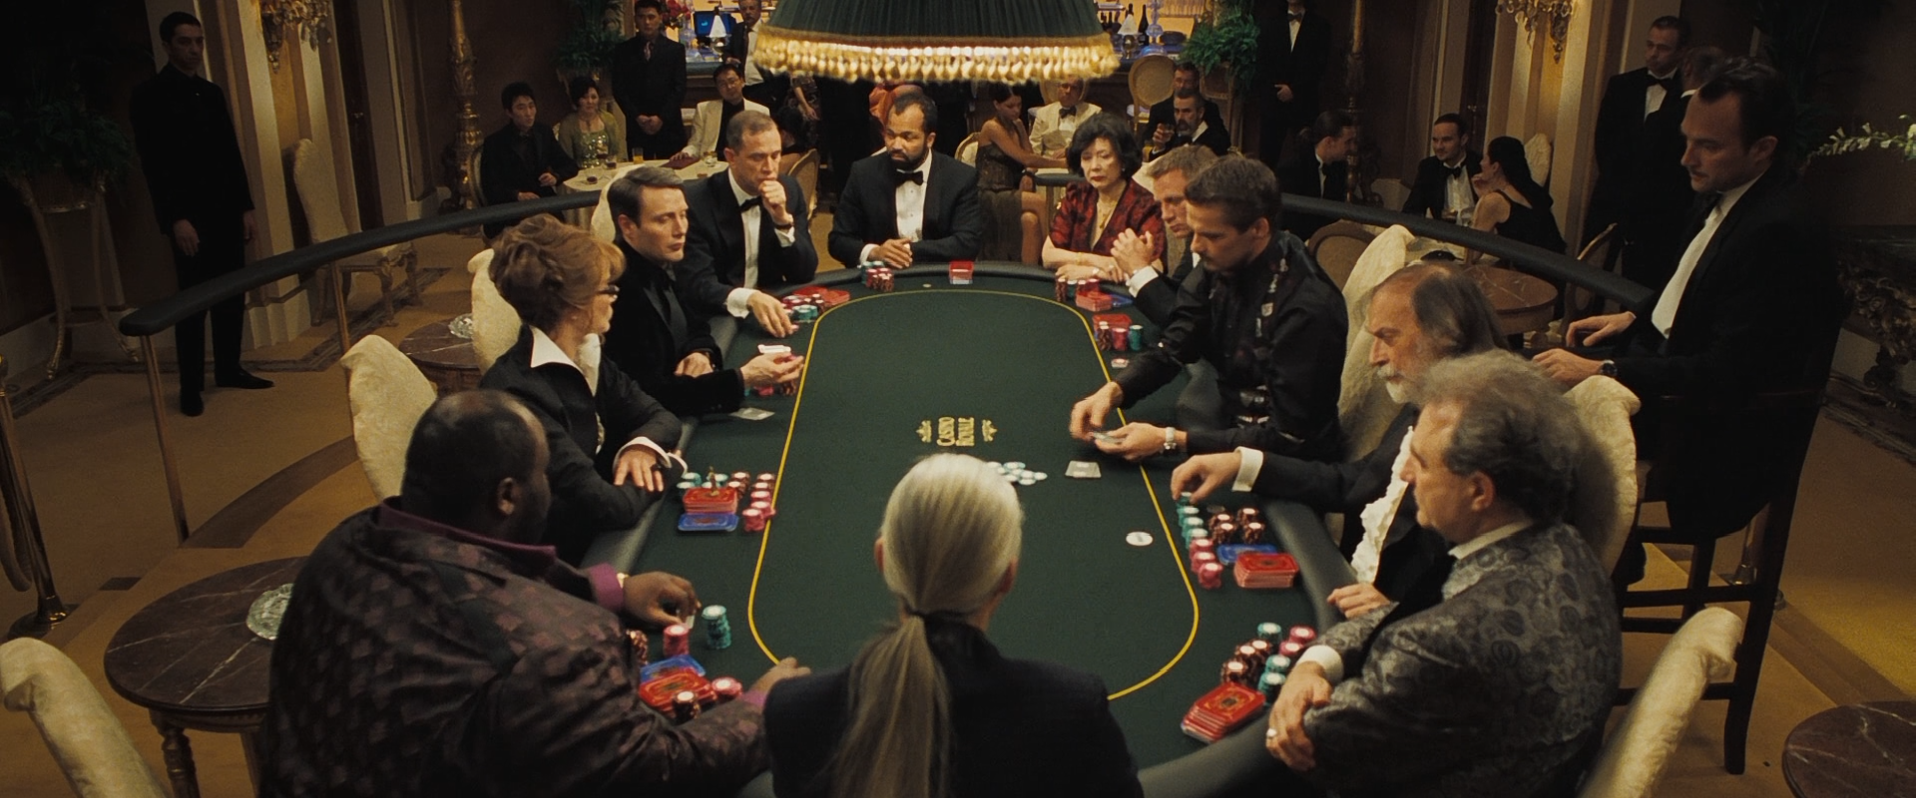 the final scene in casino royale location